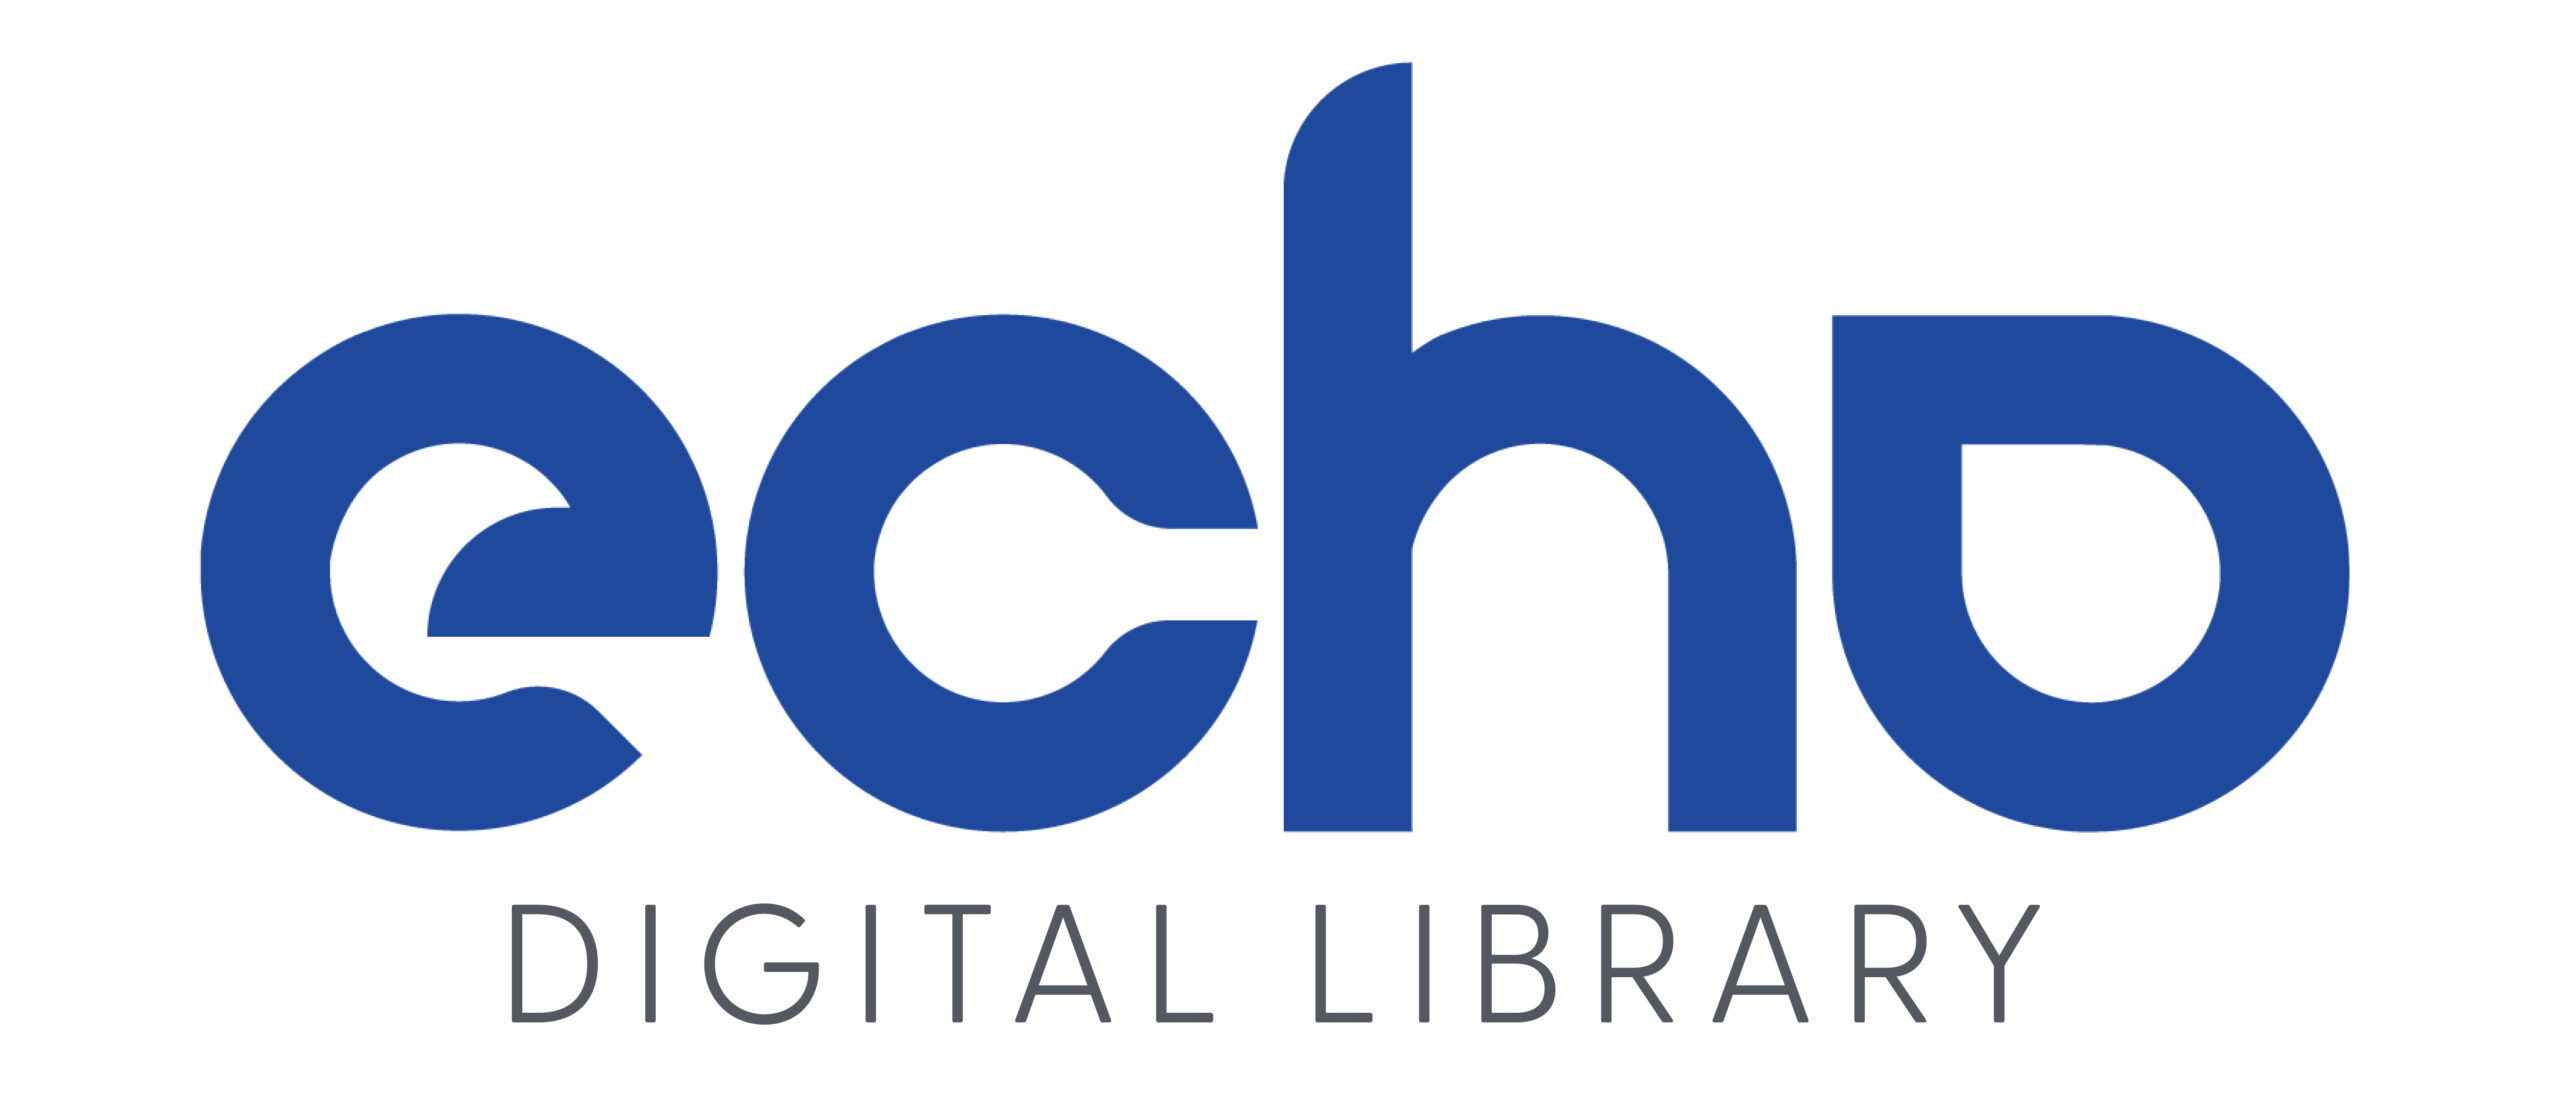 Echo Digital Library